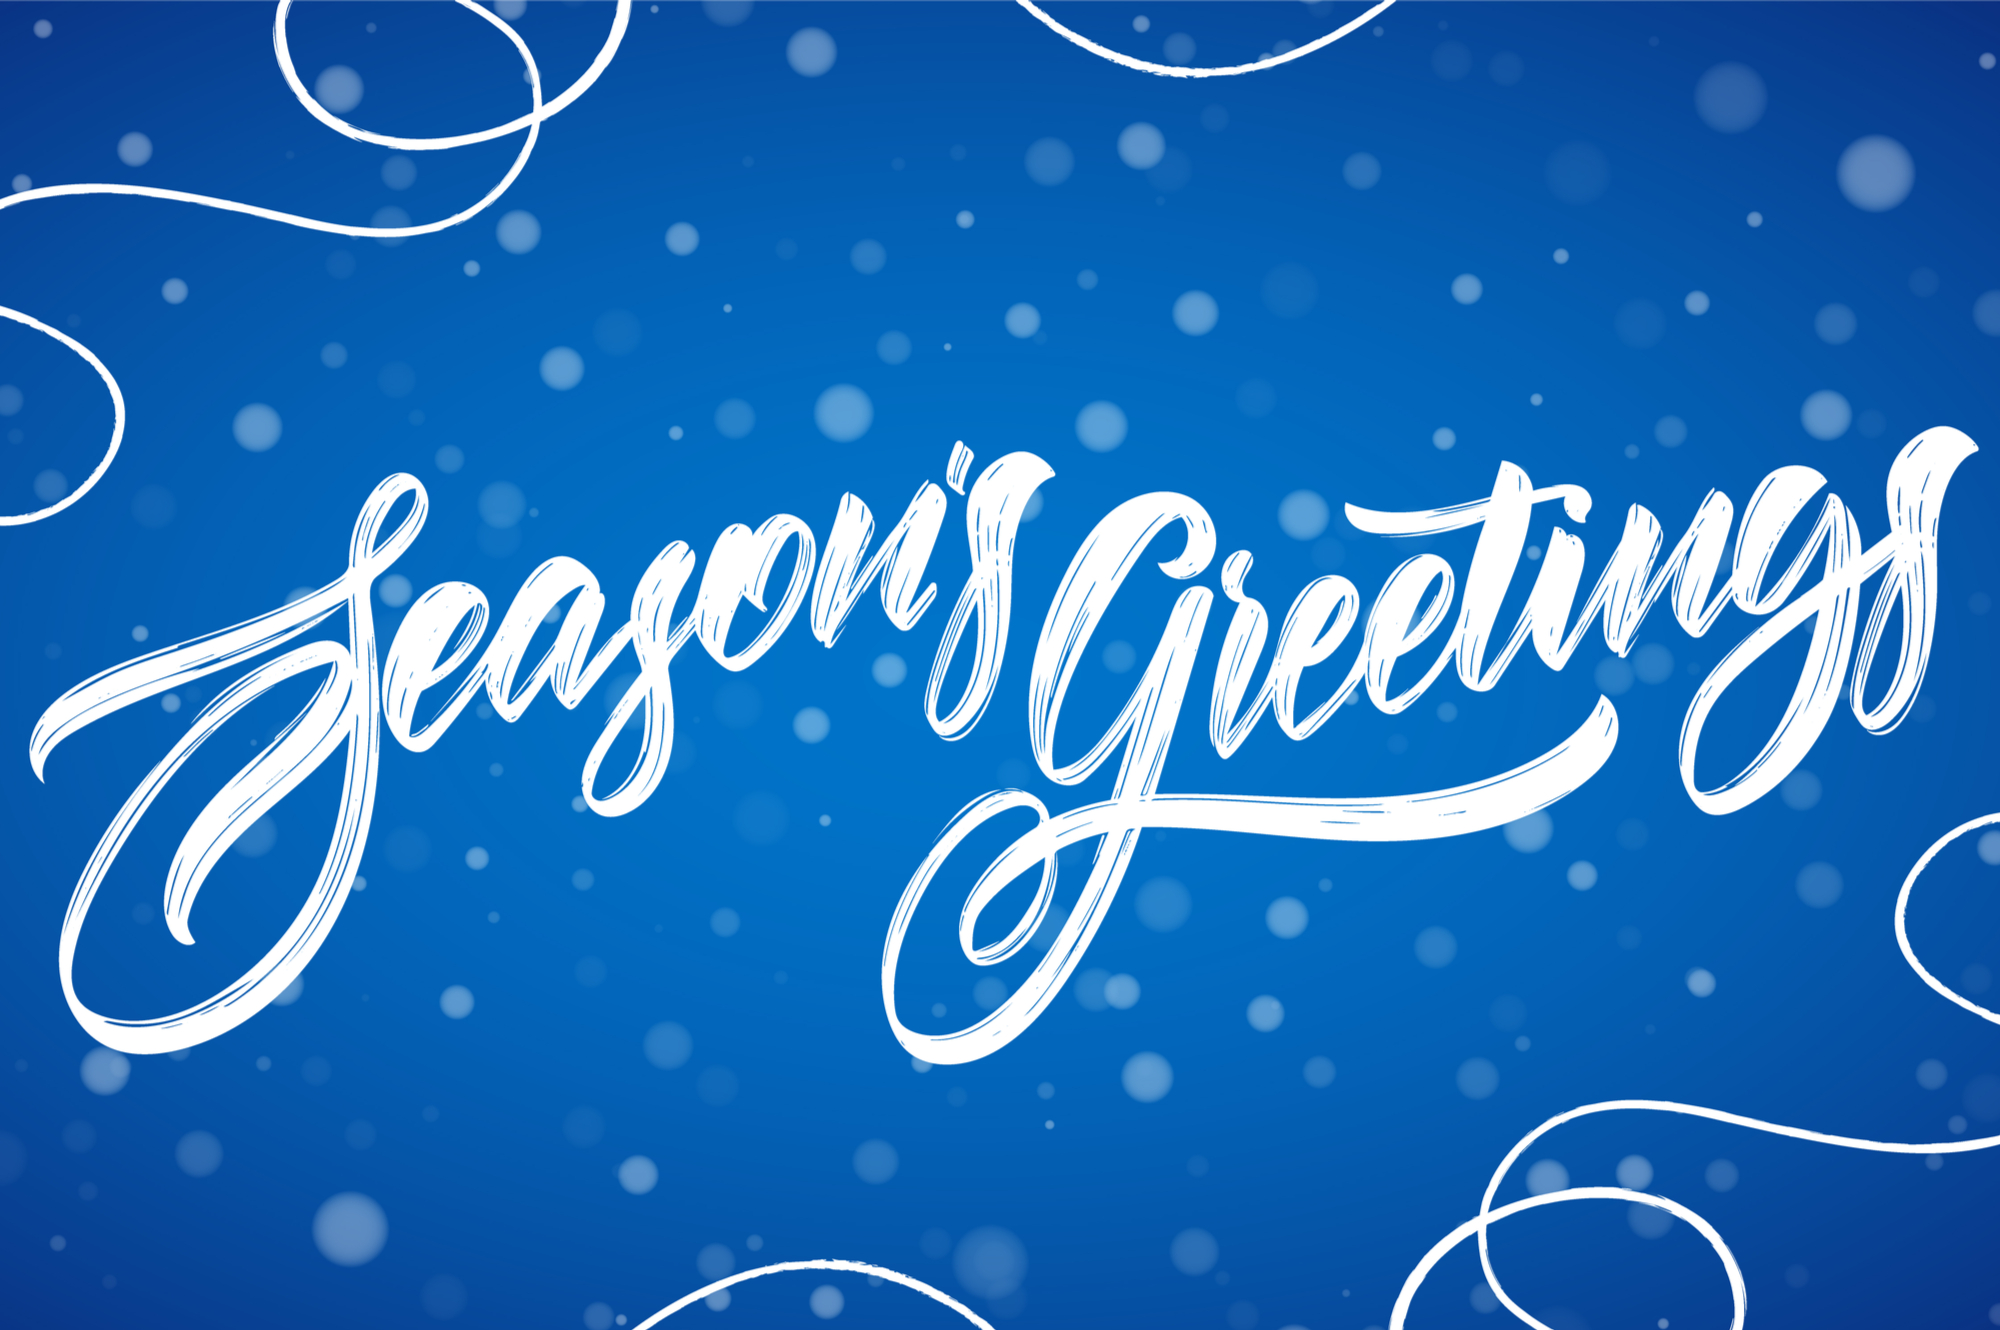 Seasons Greetings from JTL